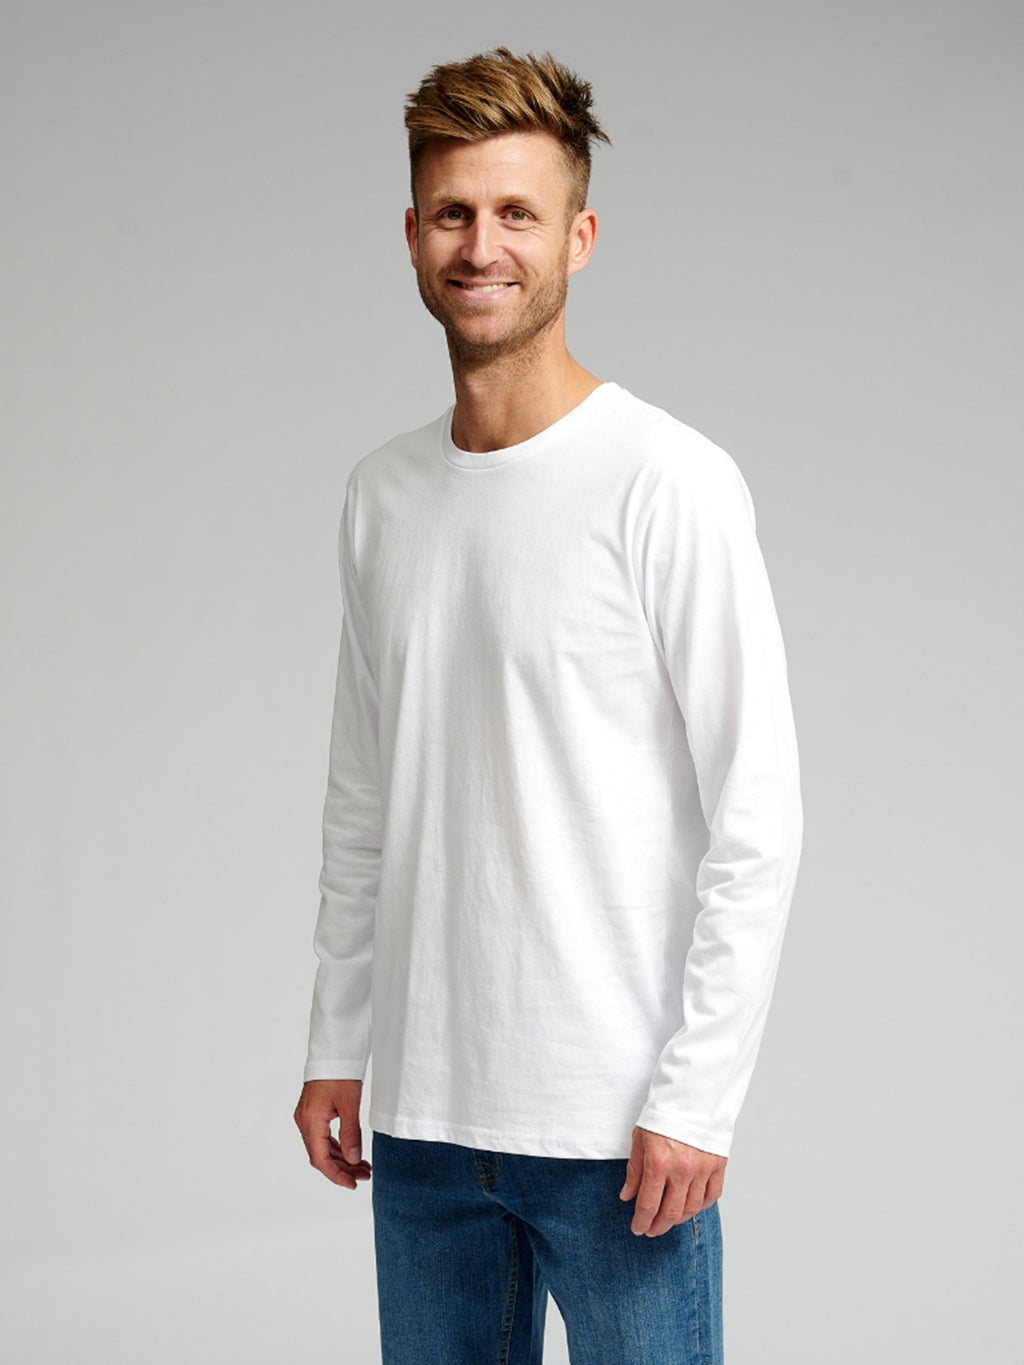 Osnovna majica s dugim rukavima-bijela